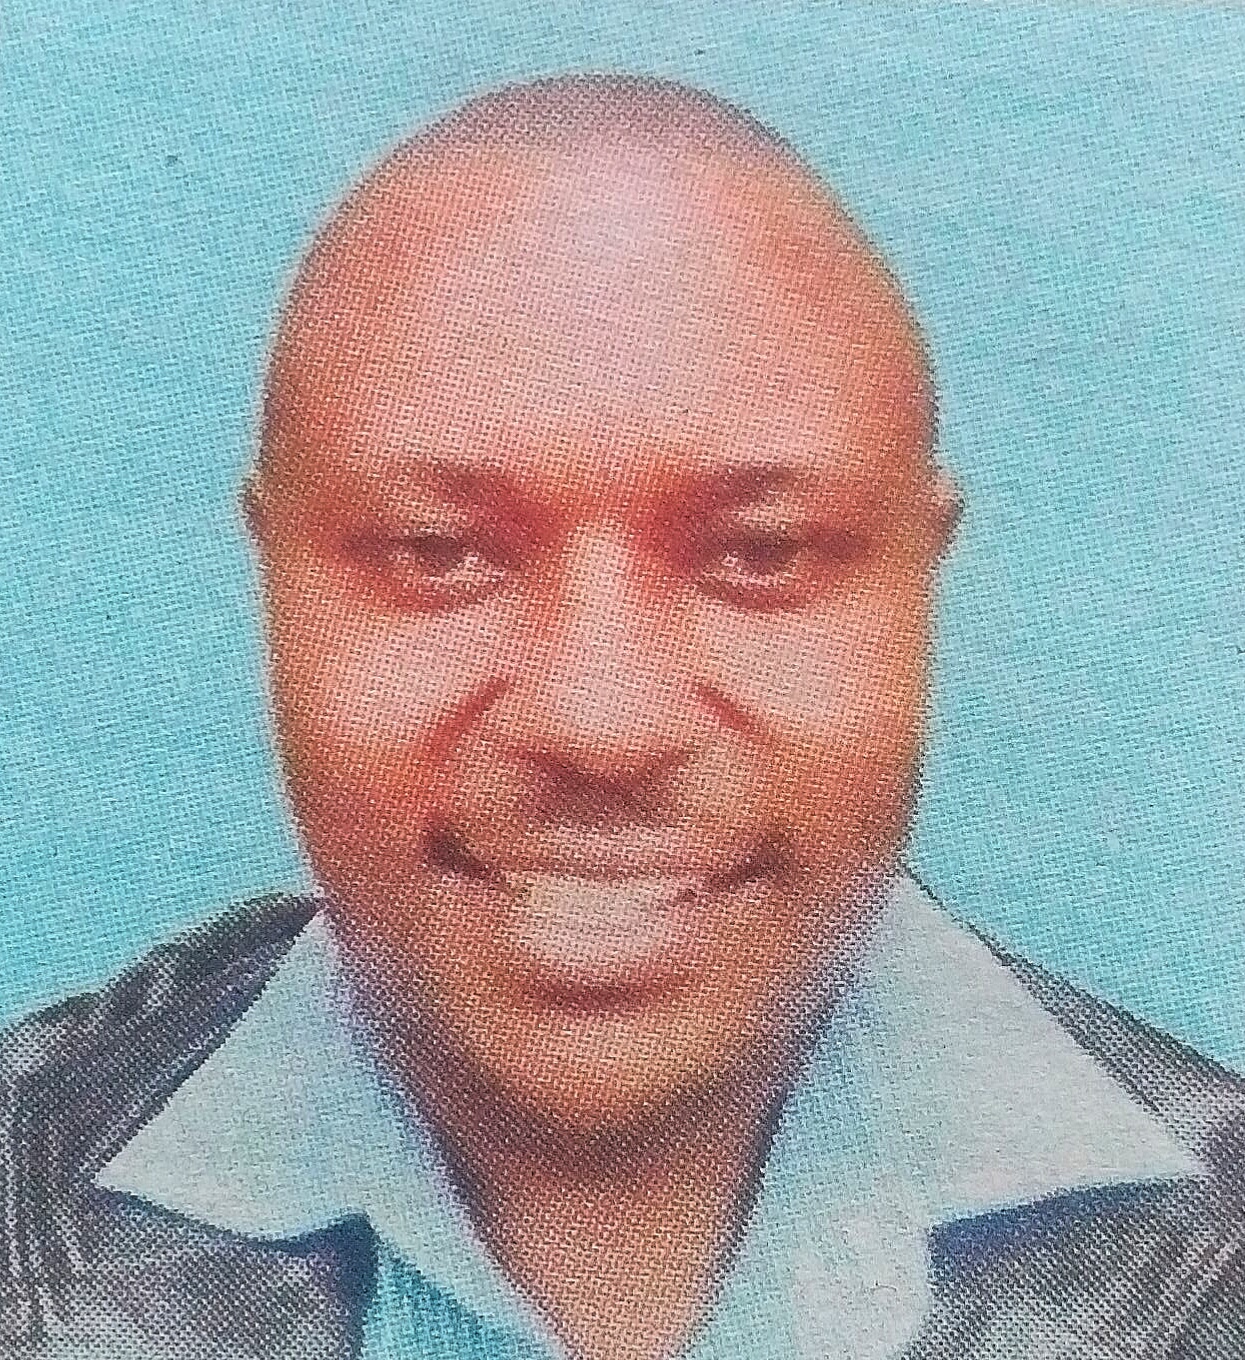 Obituary Image of Humphrey lmbiru Mmbwanga